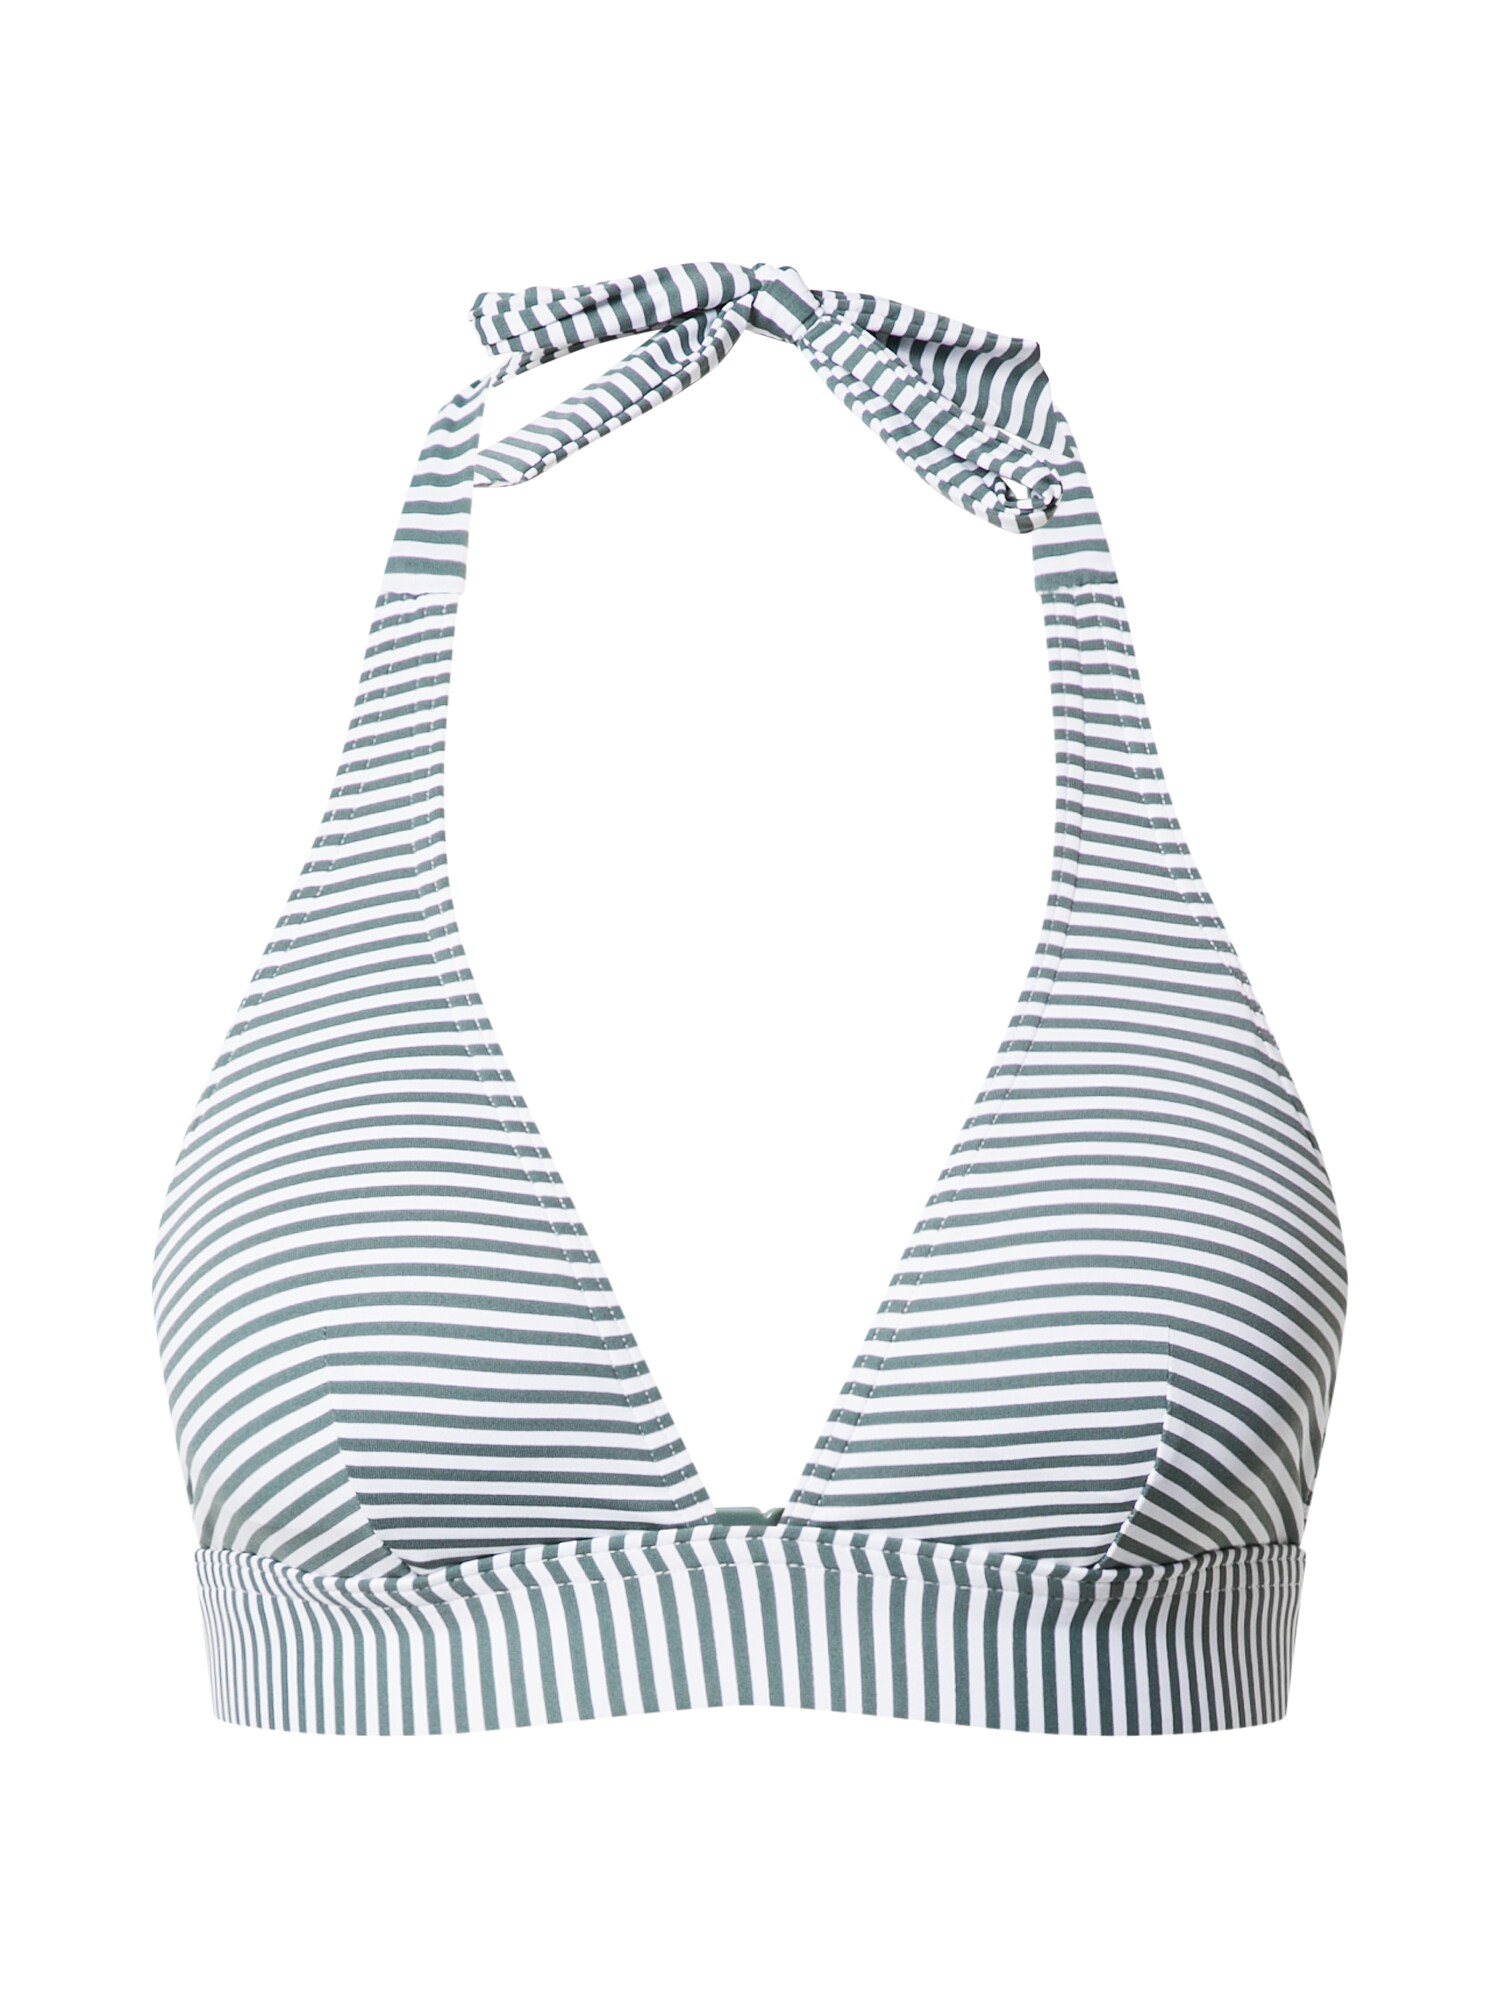 ESPRIT Bikinio viršutinė dalis 'Wireless'  alyvuogių spalva / balta